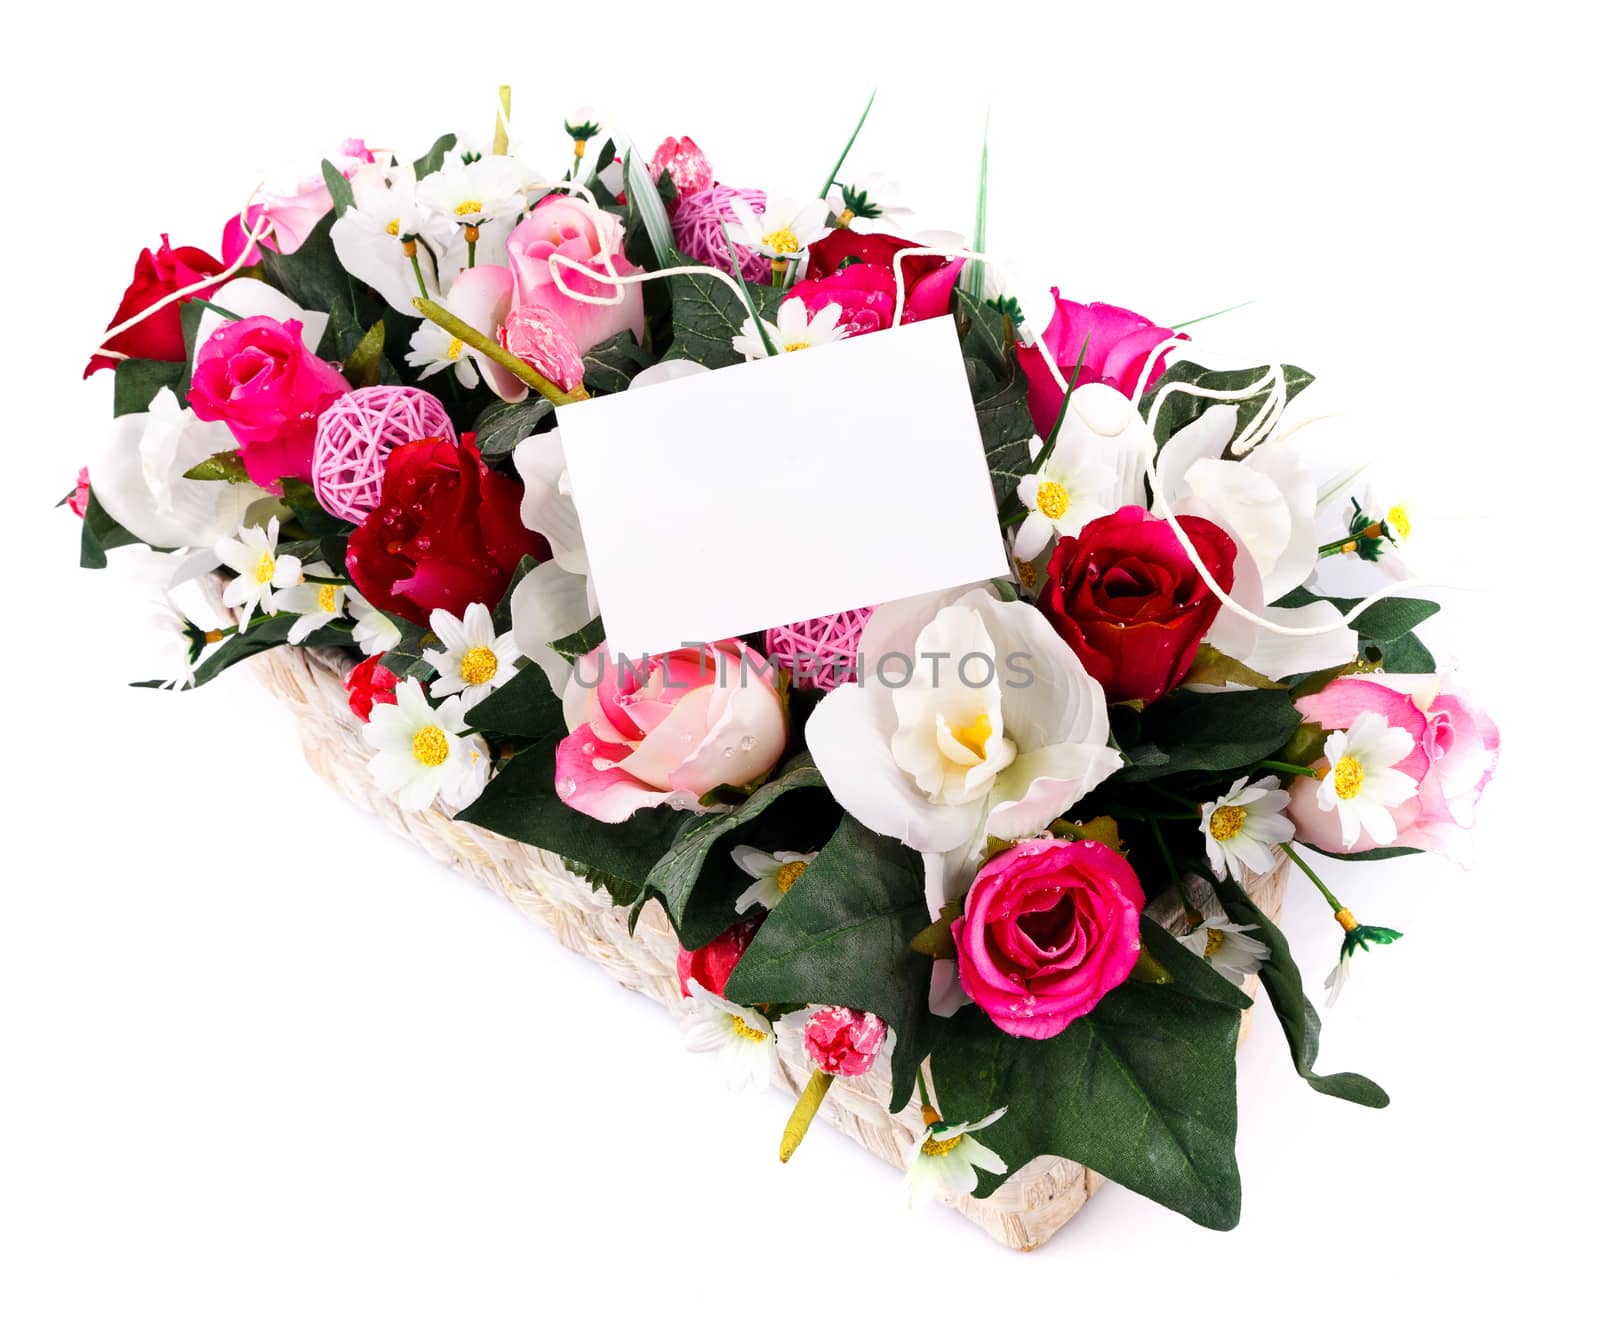 decorated flowers basket by serkucher